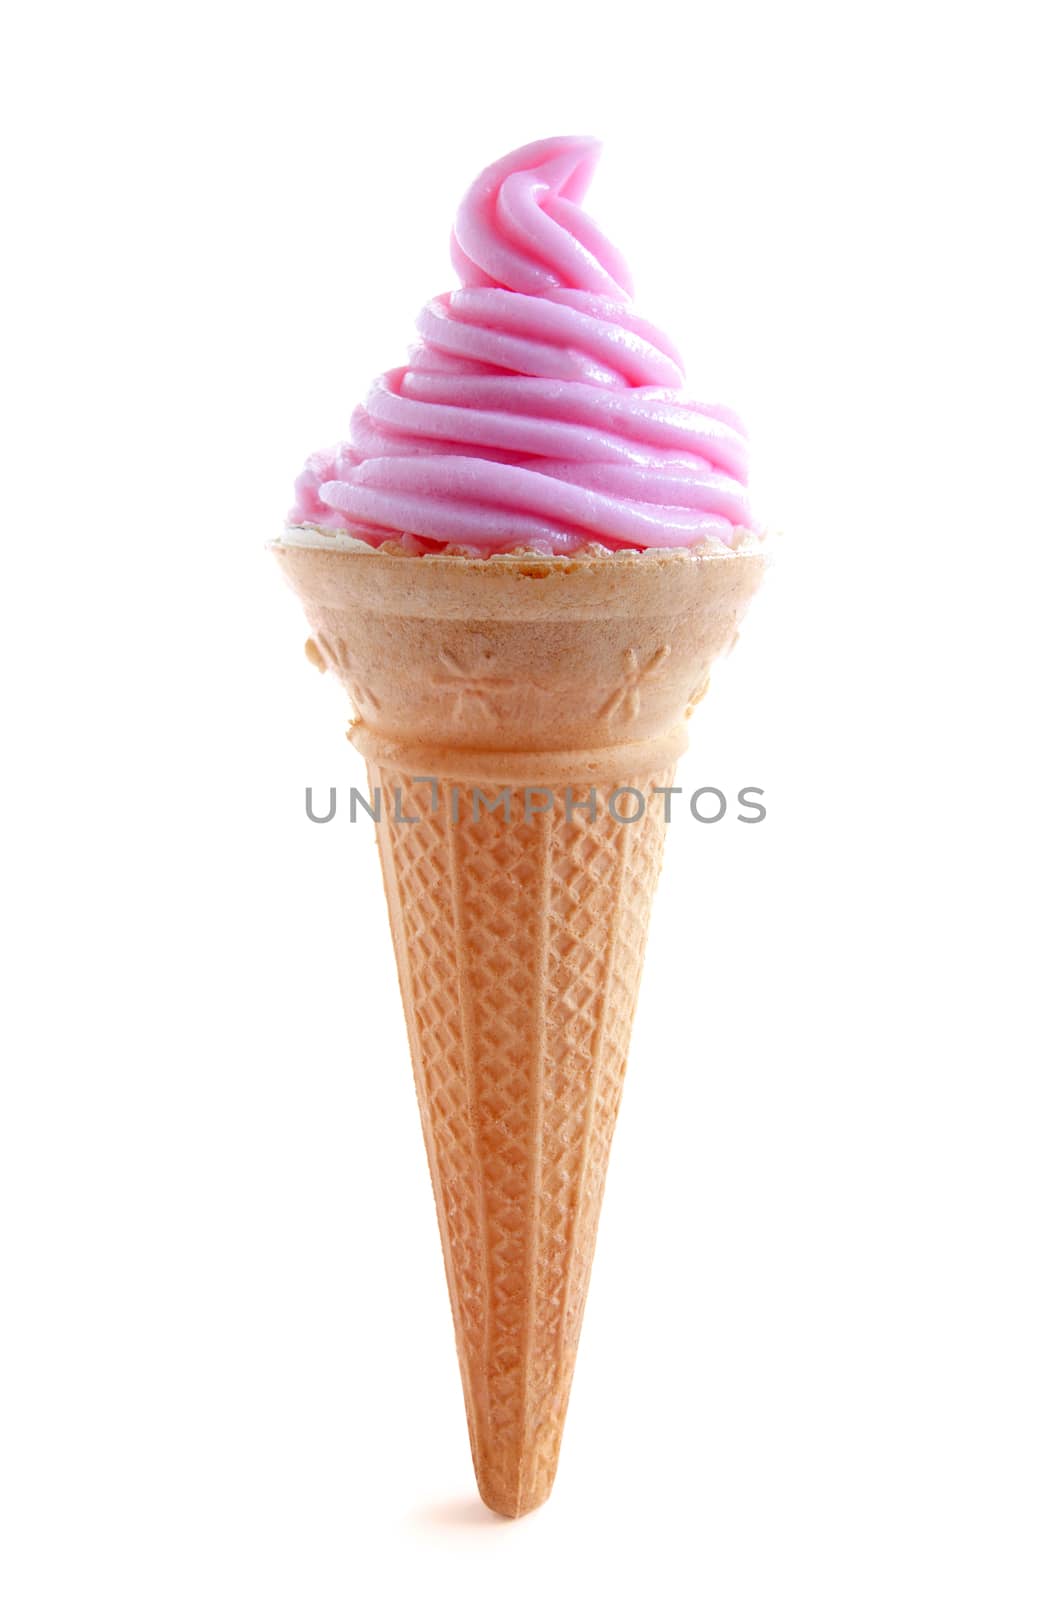 Strawberry ice cream cone over a white background